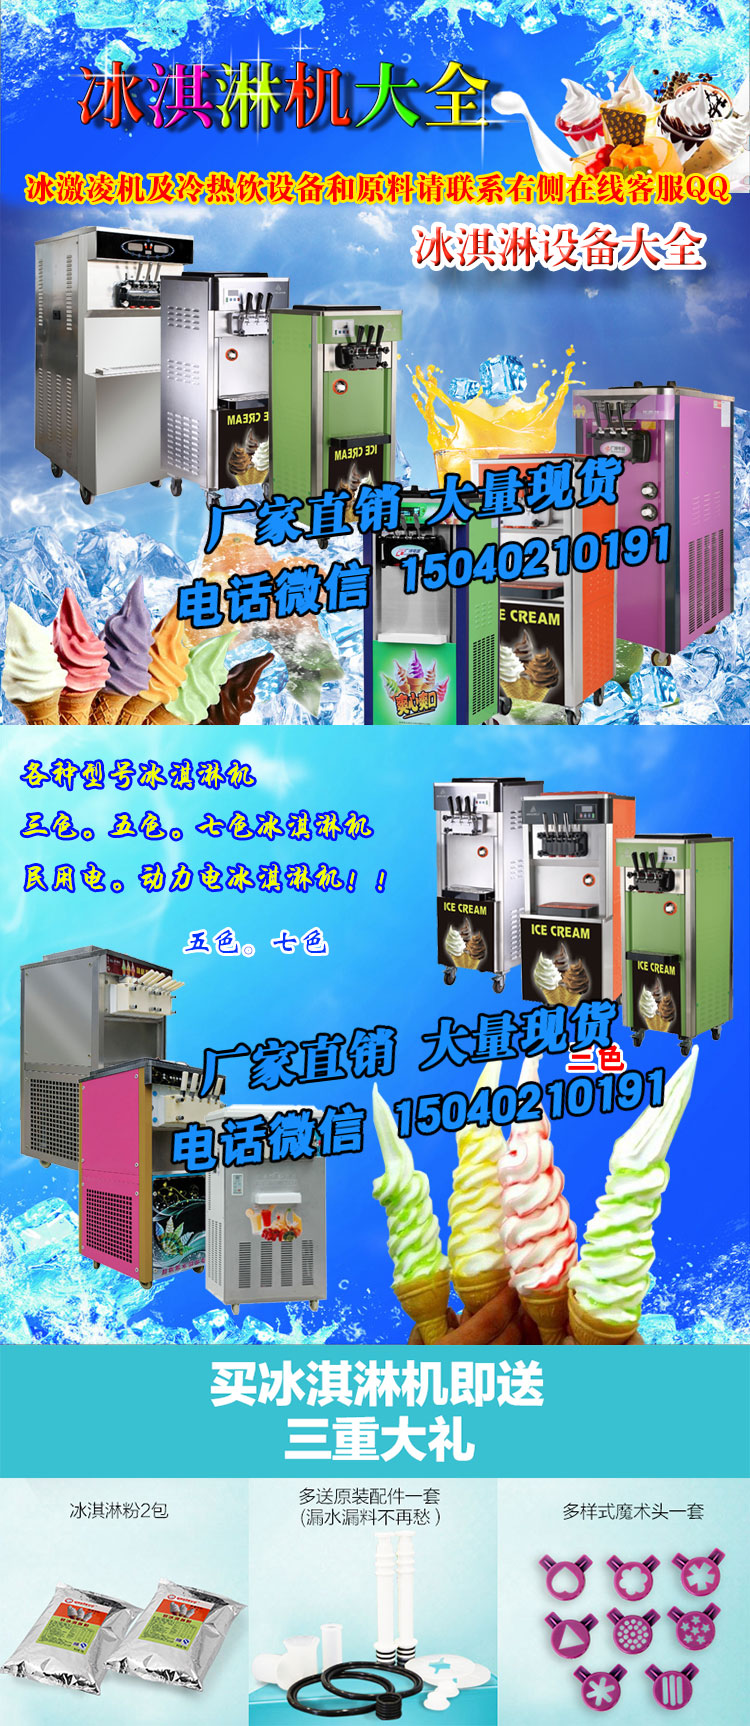 供应冰激凌机 冰淇淋机 厂家直销冰淇淋机